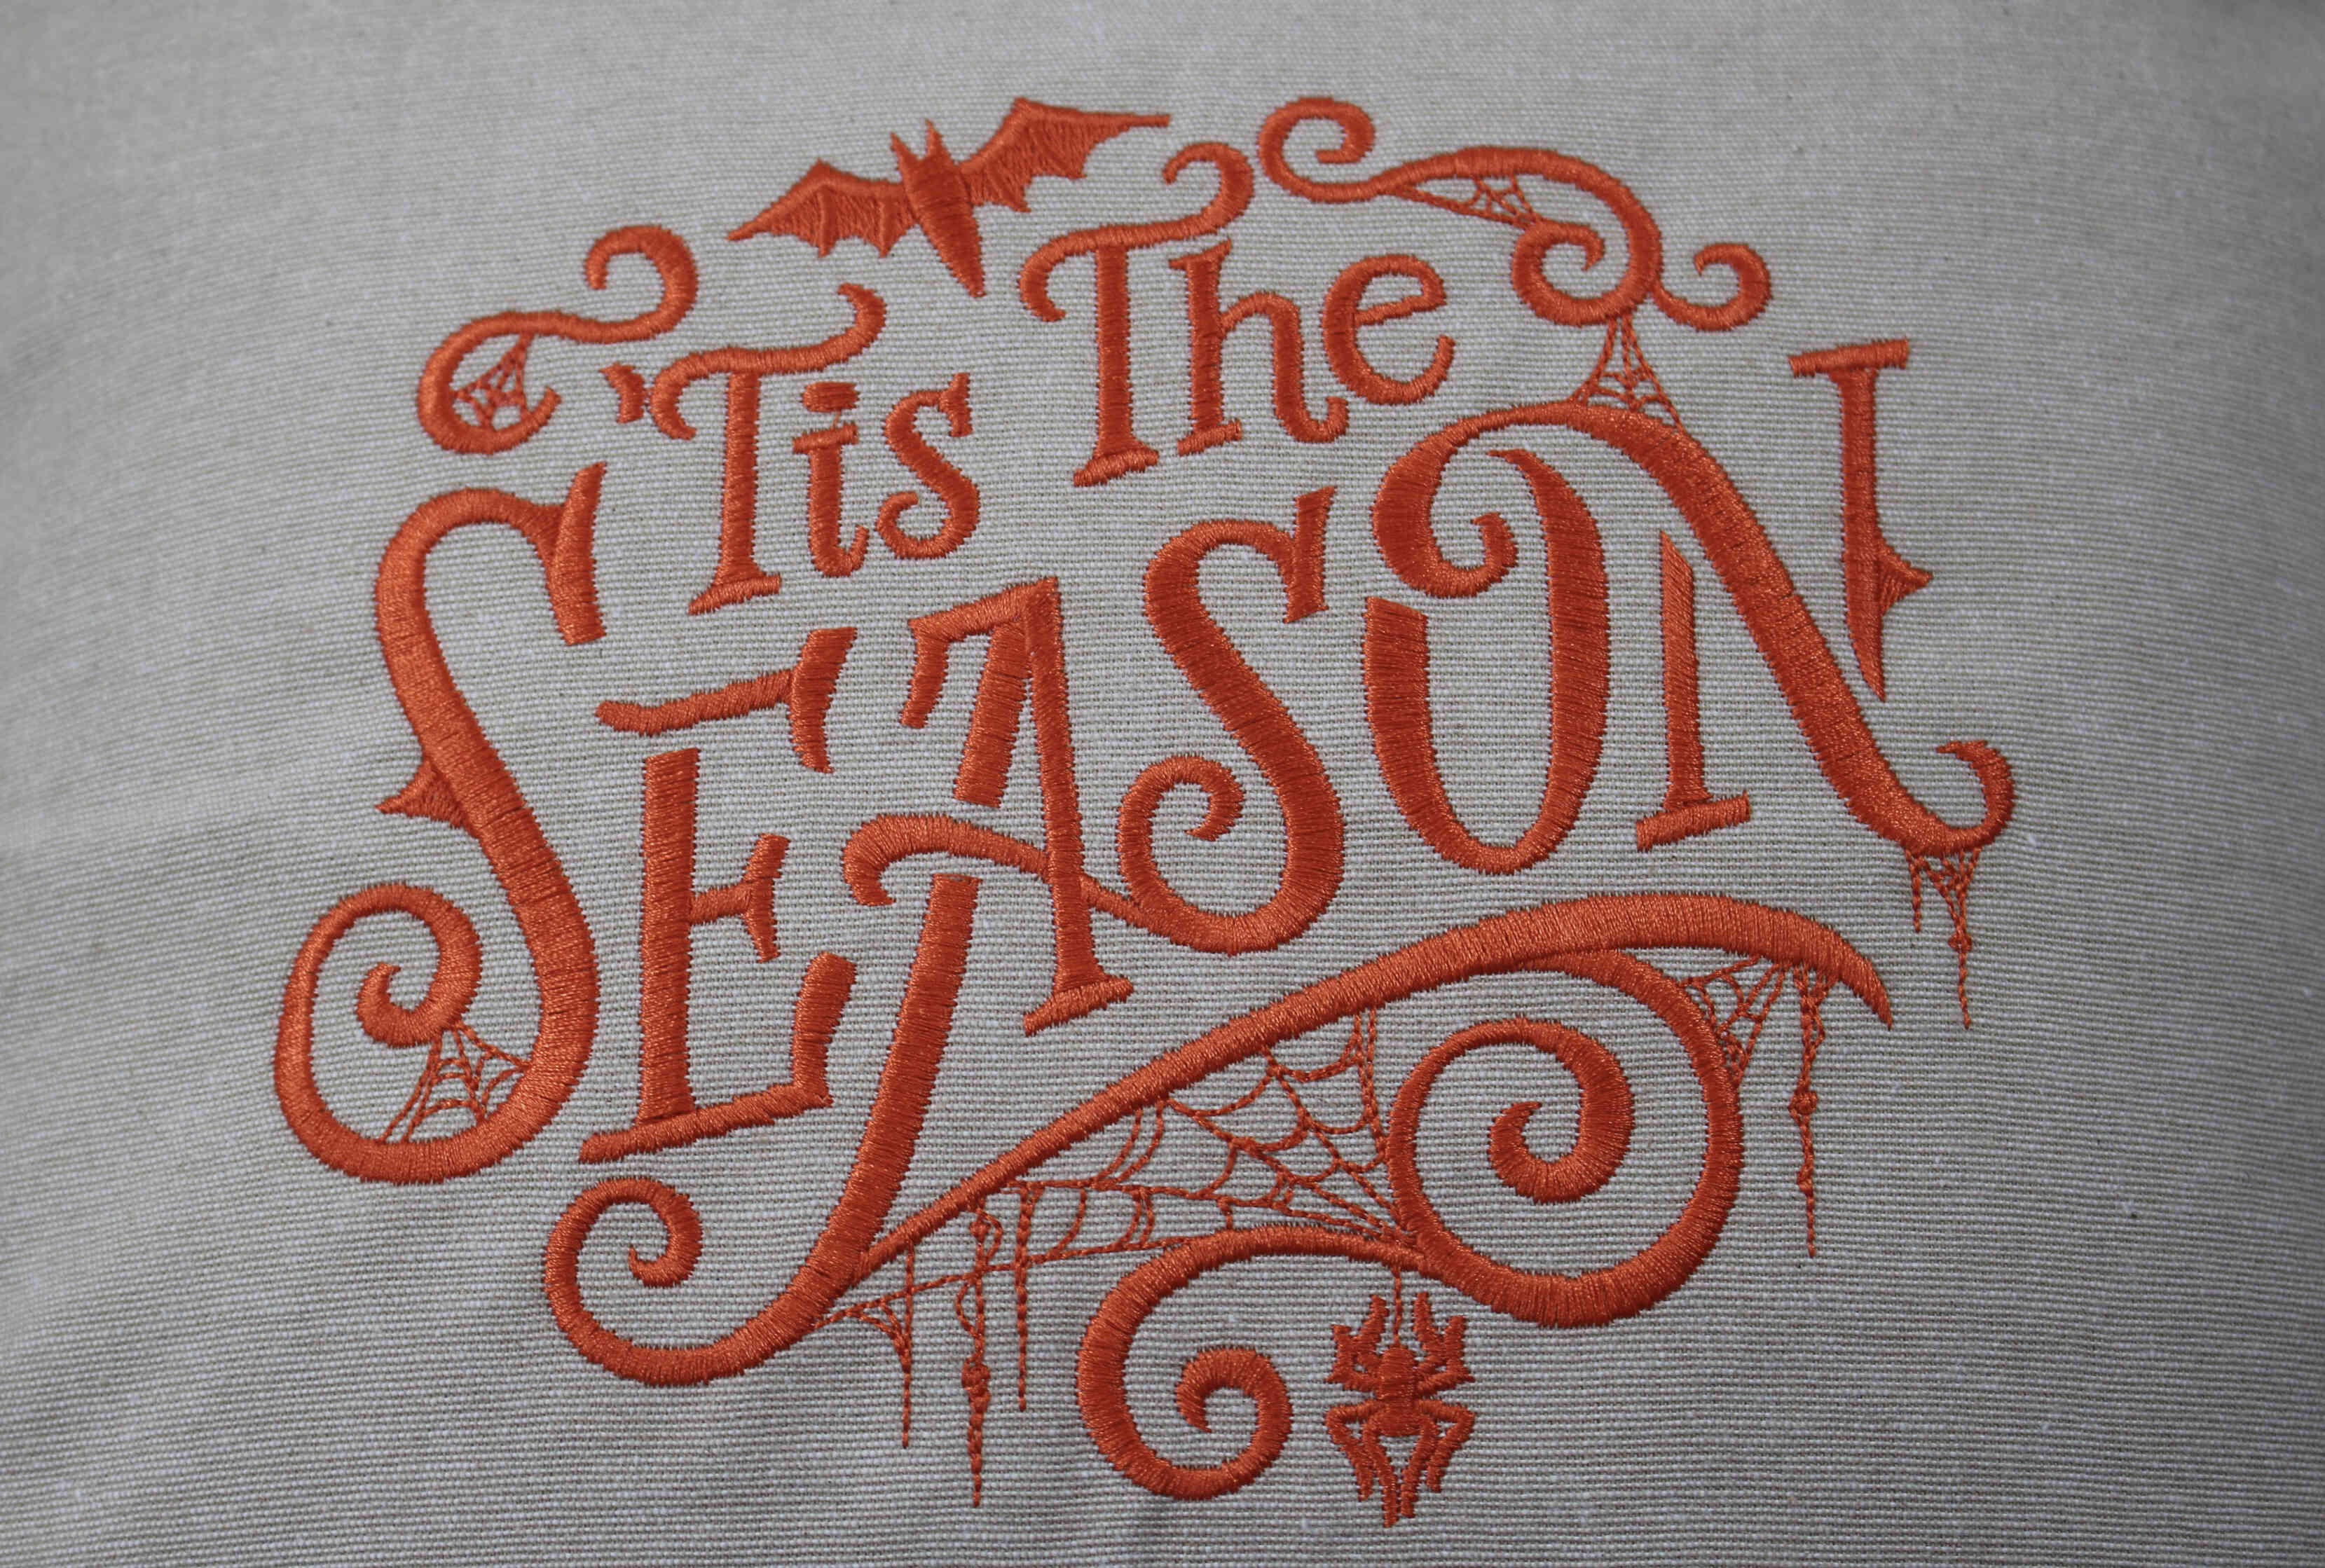 Embroidered Throw Pillow - Halloween "Tis the Season"